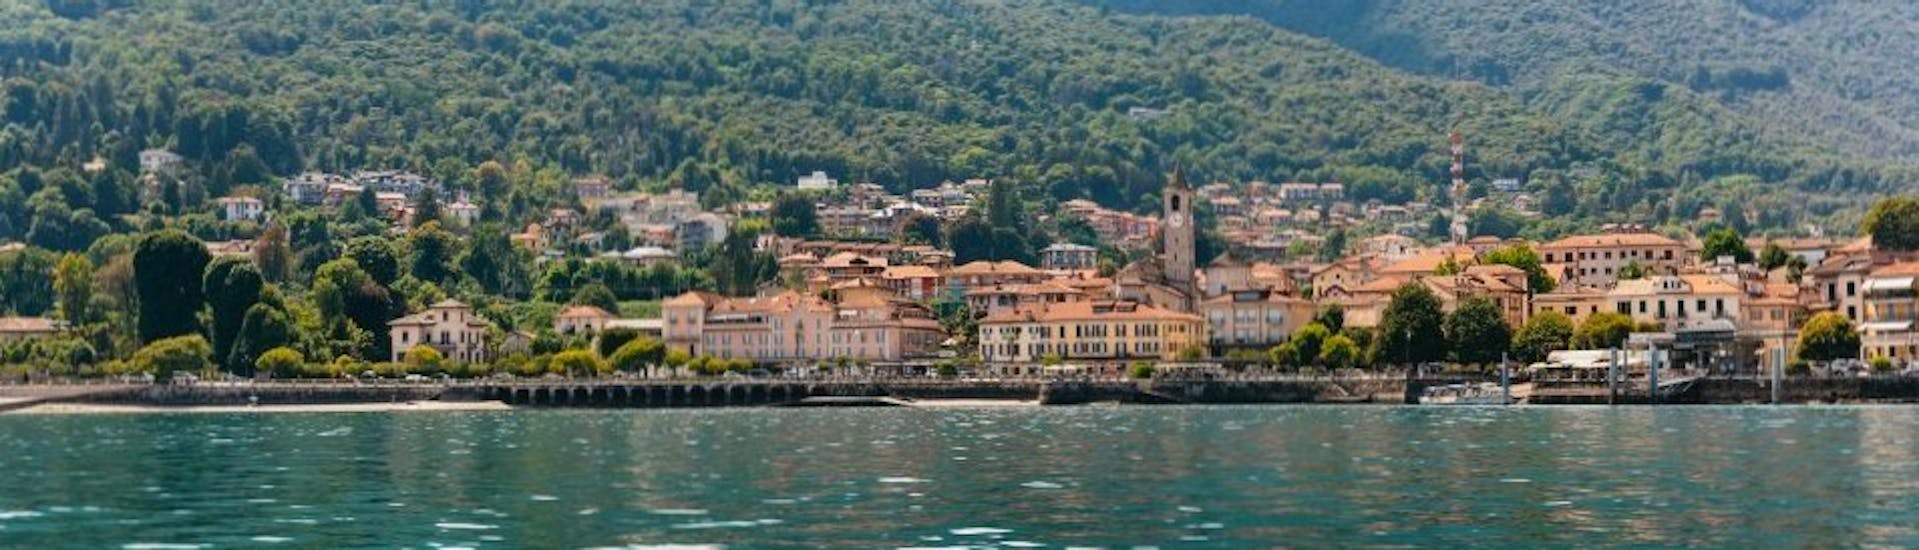 Privé boottocht van Stresa naar Isola dei Pescatori (Isola Superiore) met zonsondergang & toeristische attracties.